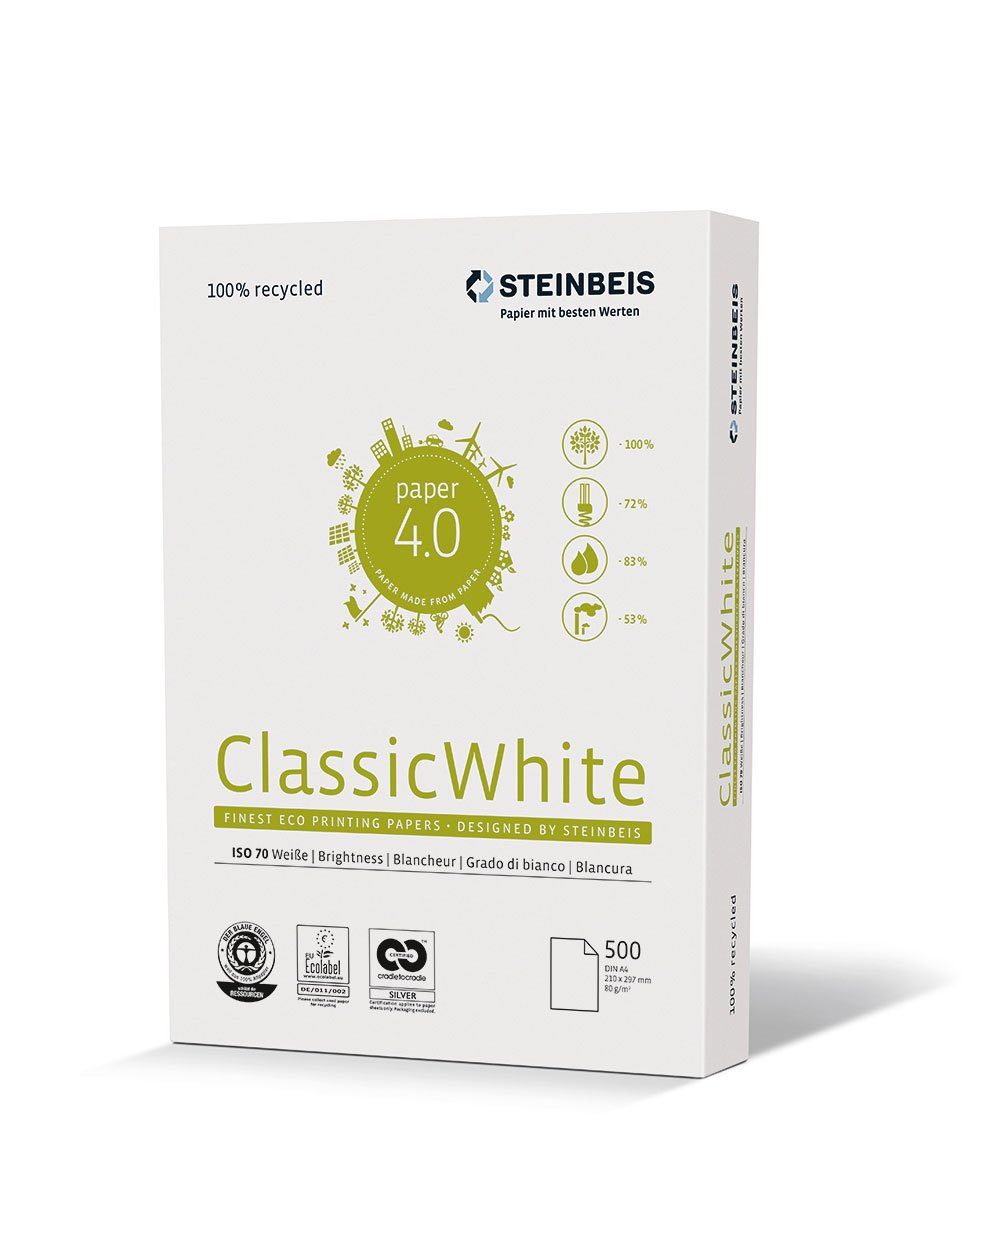 STEINBEIS Druckerpapier Steinbeis 5216 080 10 00 1 Cl- Assic White - A4, 80g, weiß, 500 Blatt